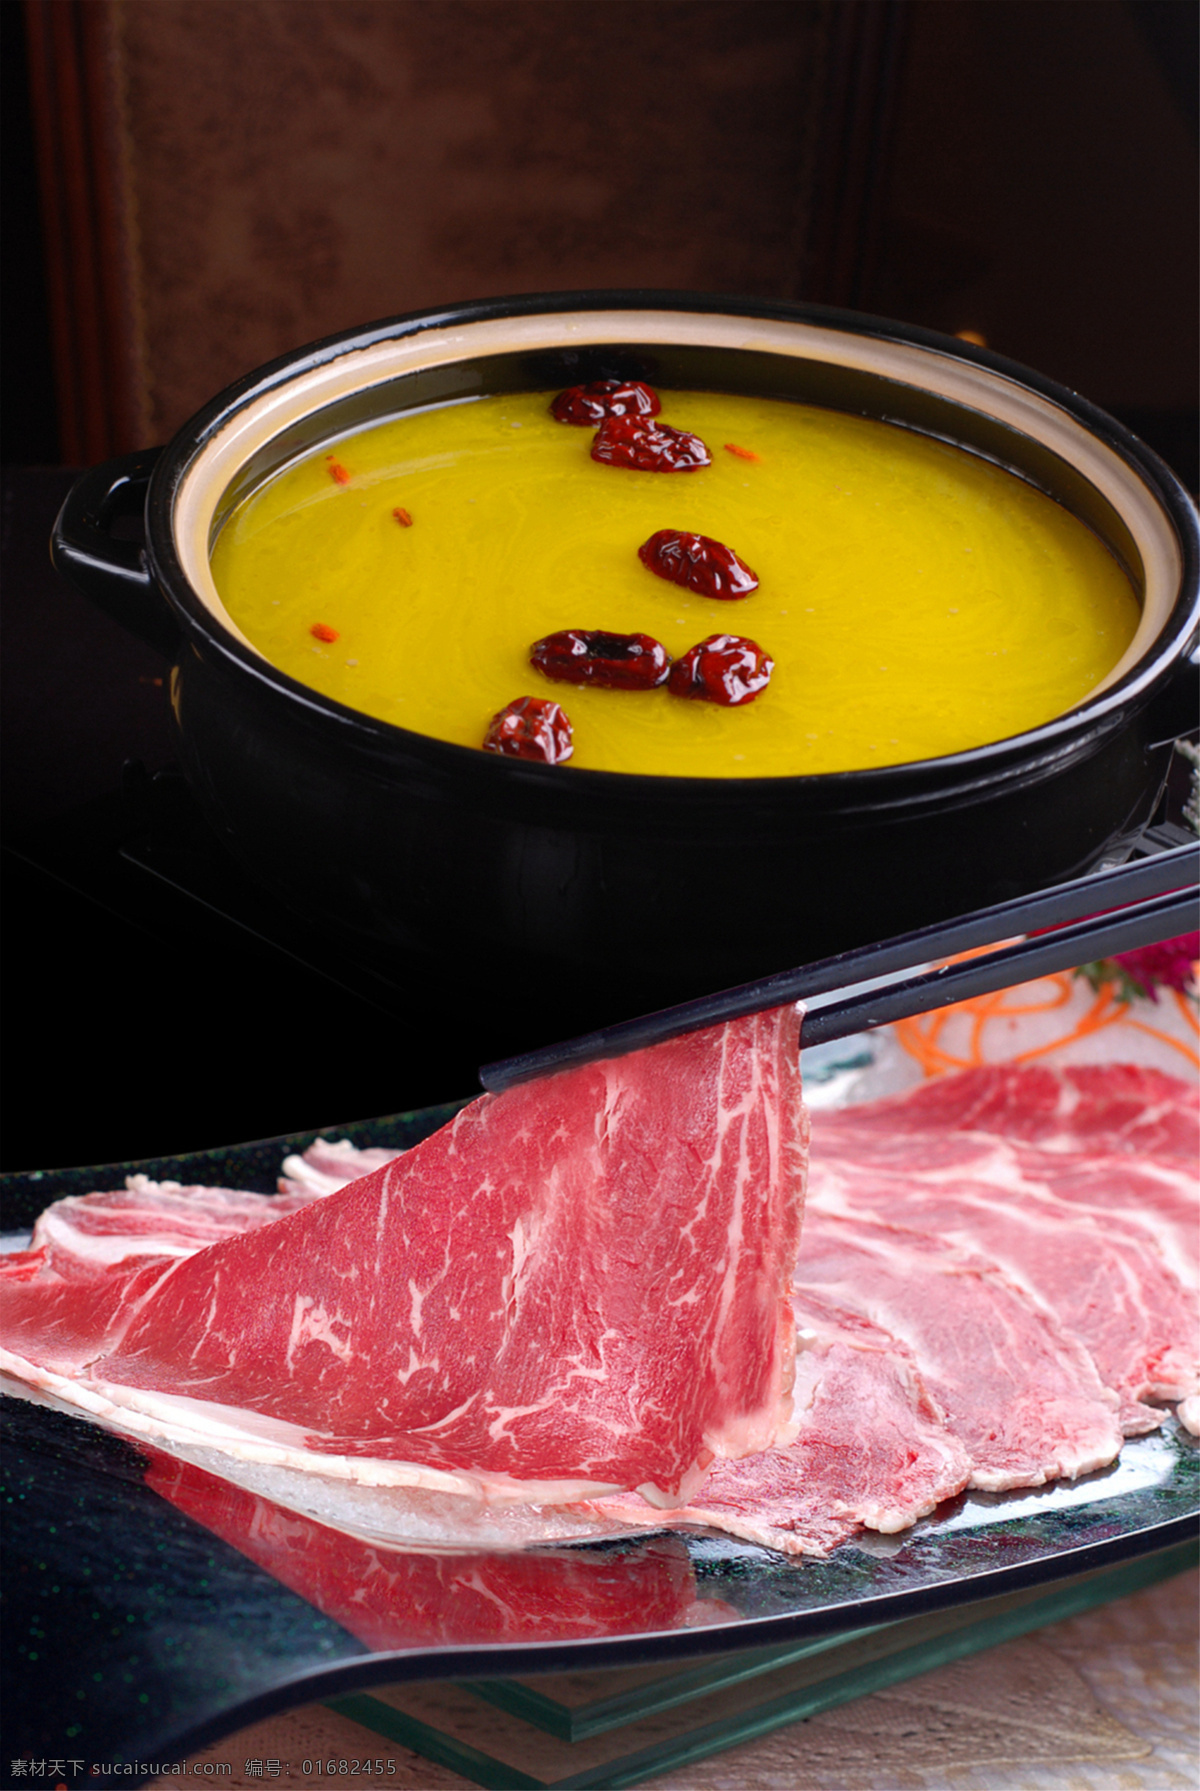 翅汤神户牛肉 美食 传统美食 餐饮美食 高清菜谱用图